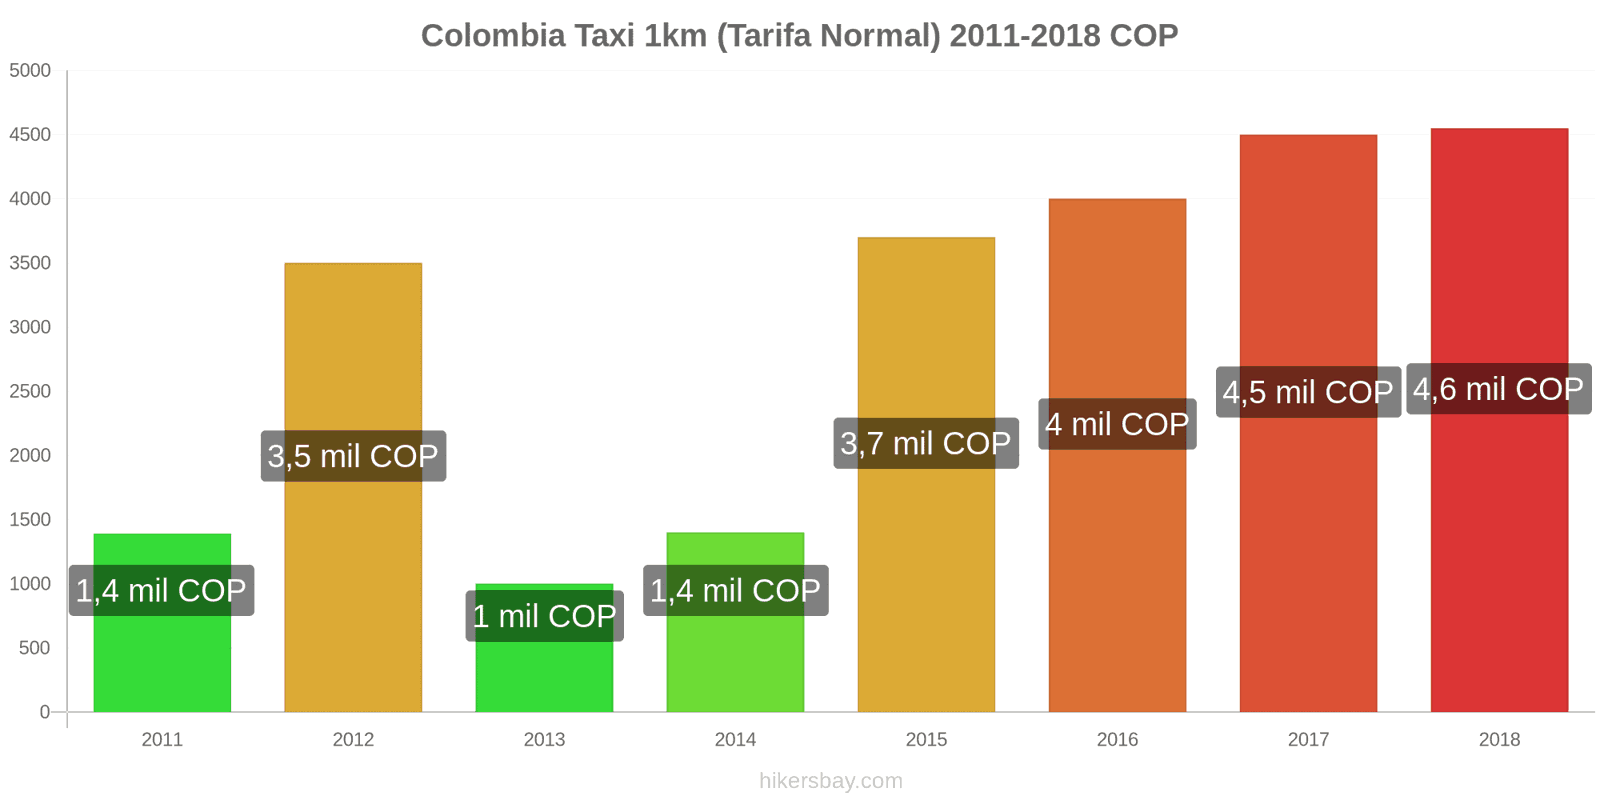 Colombia cambios de precios Taxi 1km (tarifa normal) hikersbay.com